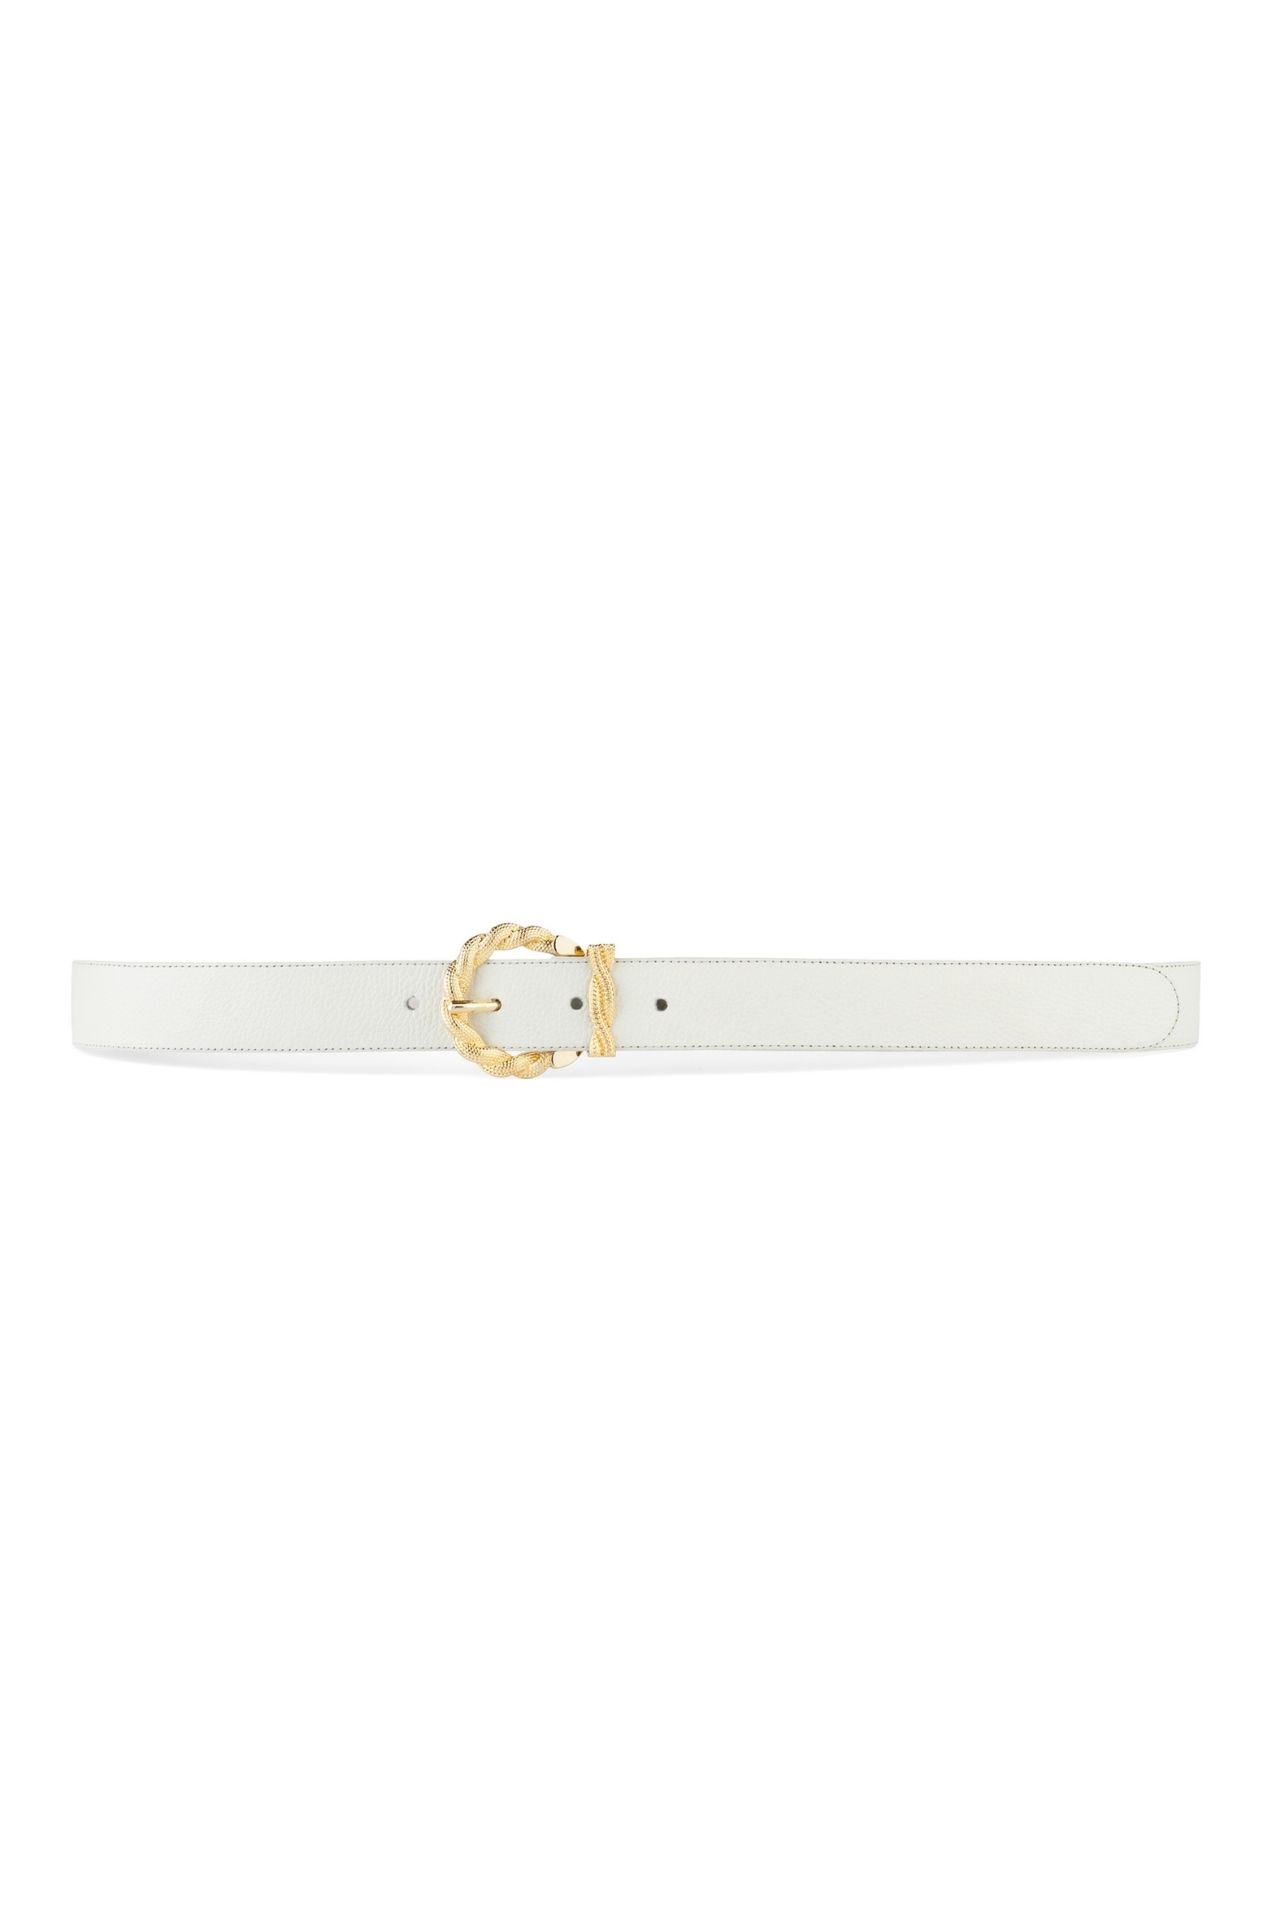 Blanco y dorado, una combinación elegante y un must have en el clóset. El nuevo cinturón String Papyrus es el detalle que debes incluir para elevar tus outfits.
